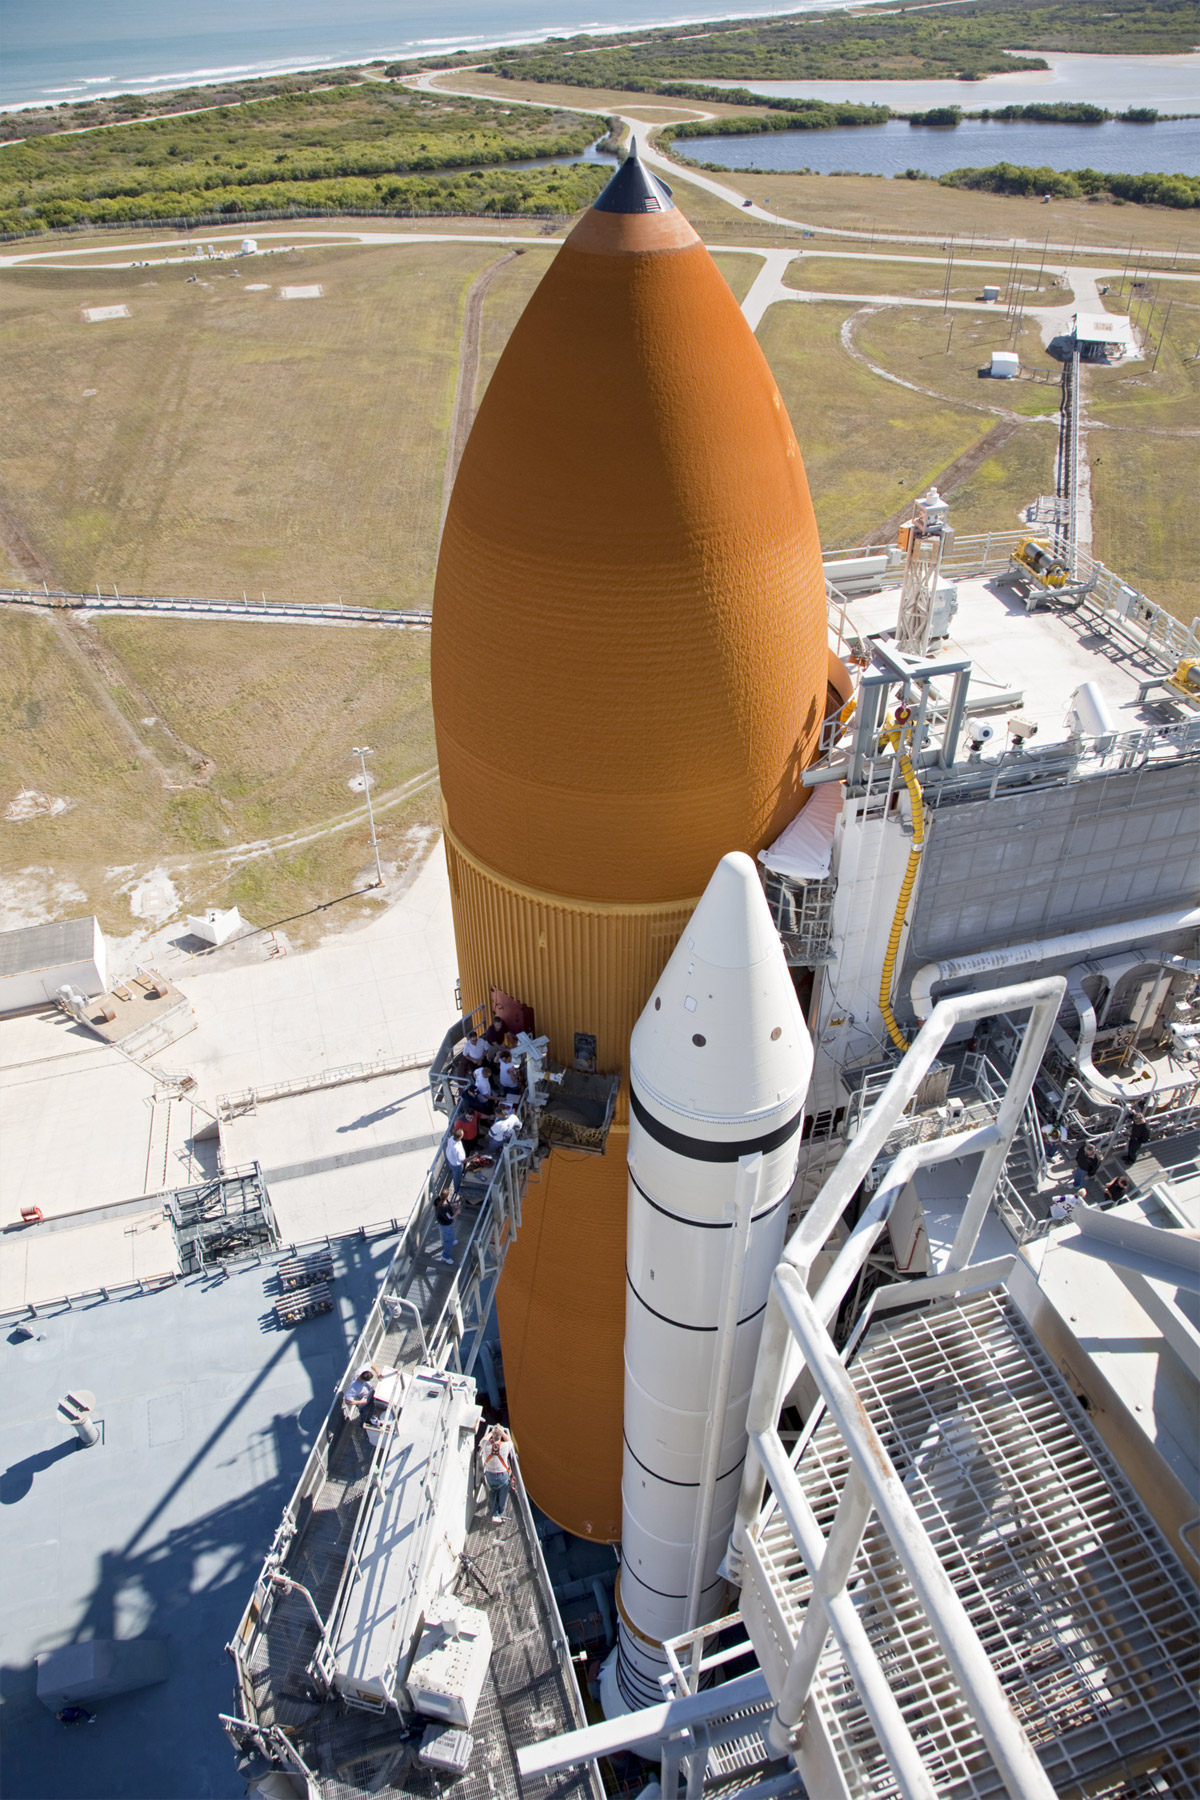 Initialement prévu le 1er novembre, le lancement de Discovery a été reporté à plusieurs reprises pour finalement être fixé au 3 février 2011. Un report qui décale le lancement d'Endeavour (STS-134) au mois d'avril 2011. © Nasa